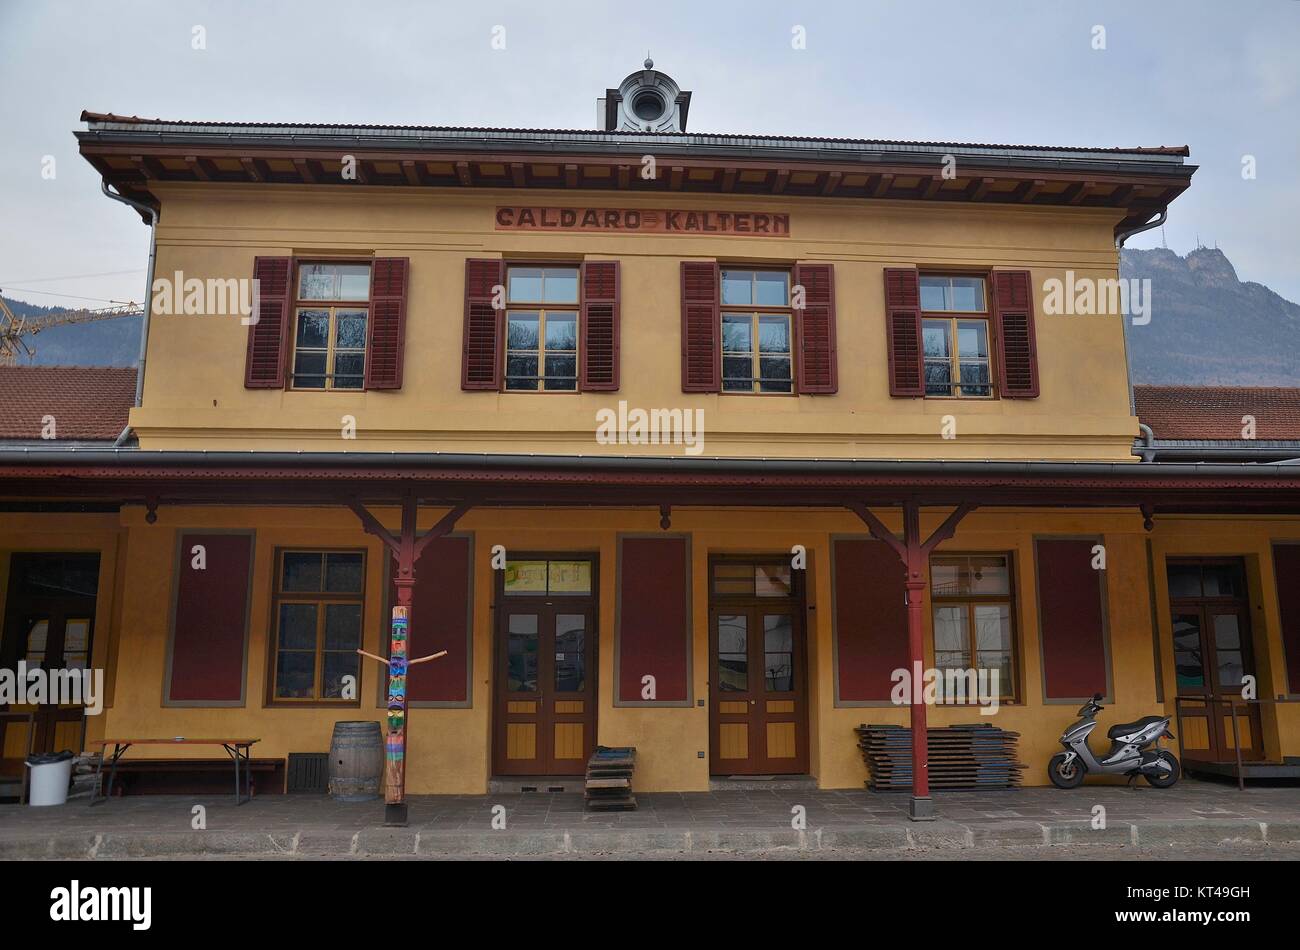 En la aldea de Caldaro" (Kaltern), Italia, en la provincia del Alto Adige (Südtirol): la antigua estación ferroviaria, ahora un centro juvenil Foto de stock